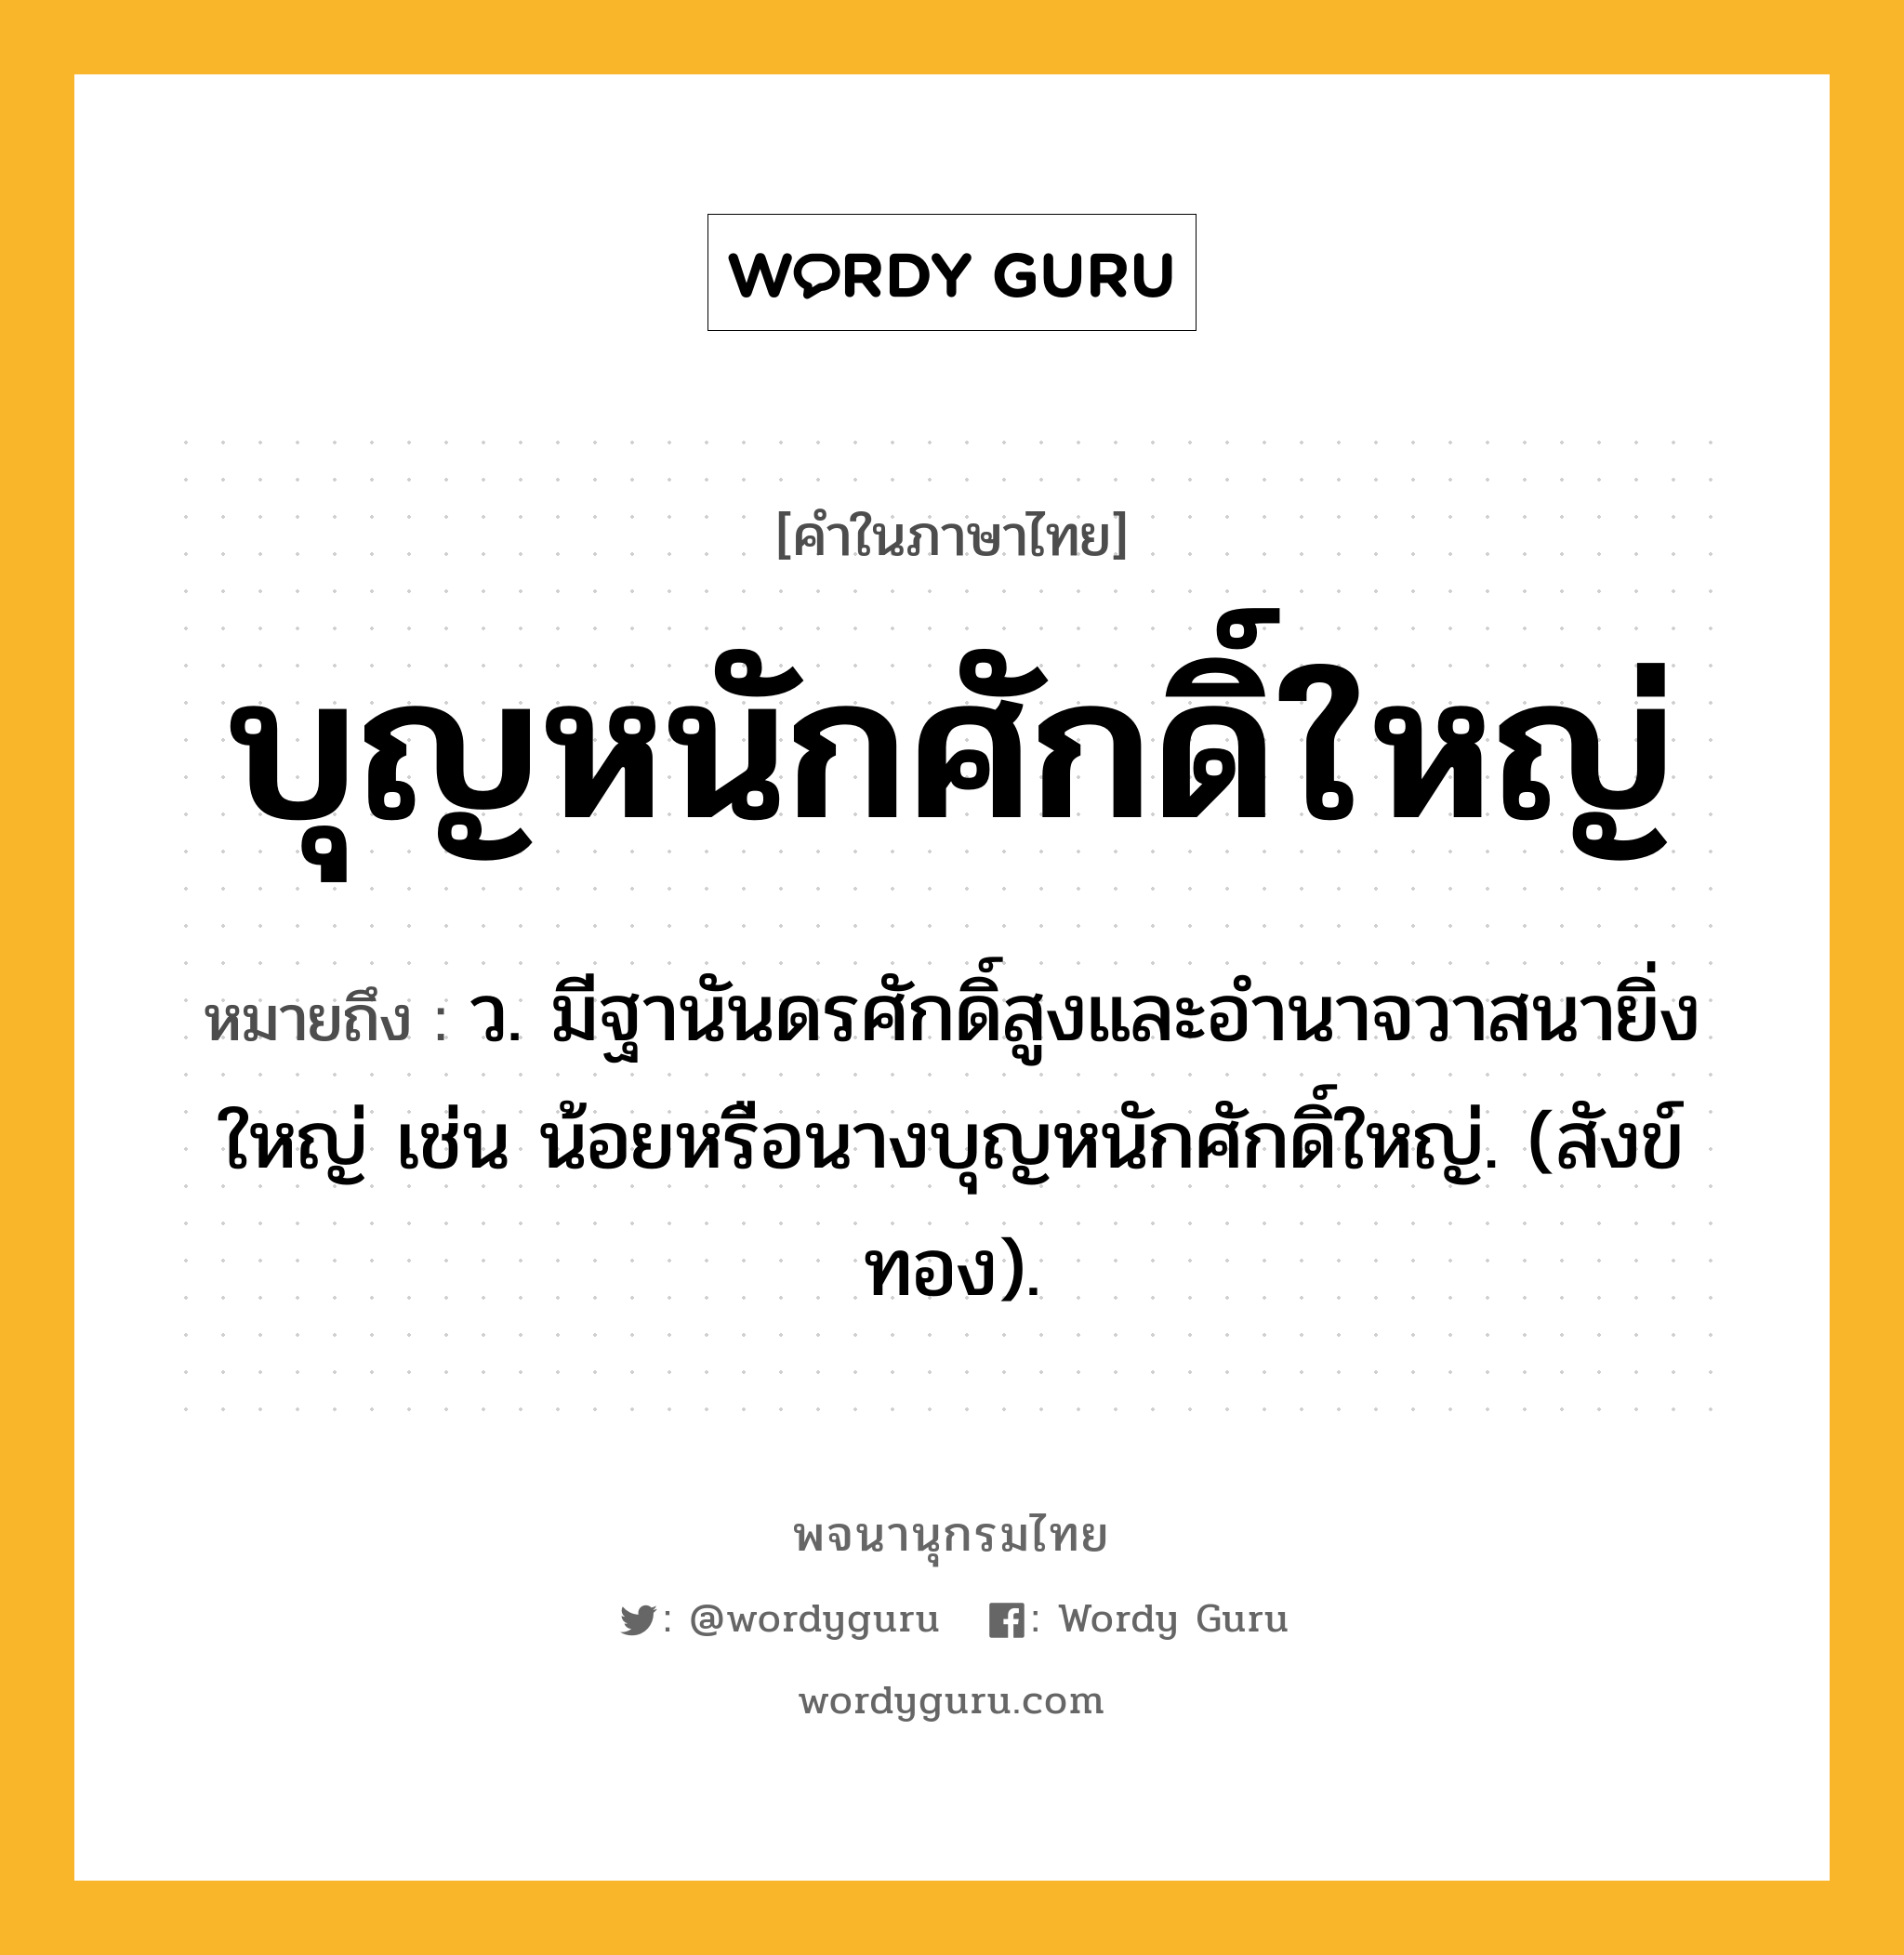 บุญหนักศักดิ์ใหญ่ ความหมาย หมายถึงอะไร?, คำในภาษาไทย บุญหนักศักดิ์ใหญ่ หมายถึง ว. มีฐานันดรศักดิ์สูงและอํานาจวาสนายิ่งใหญ่ เช่น น้อยหรือนางบุญหนักศักดิ์ใหญ่. (สังข์ทอง).